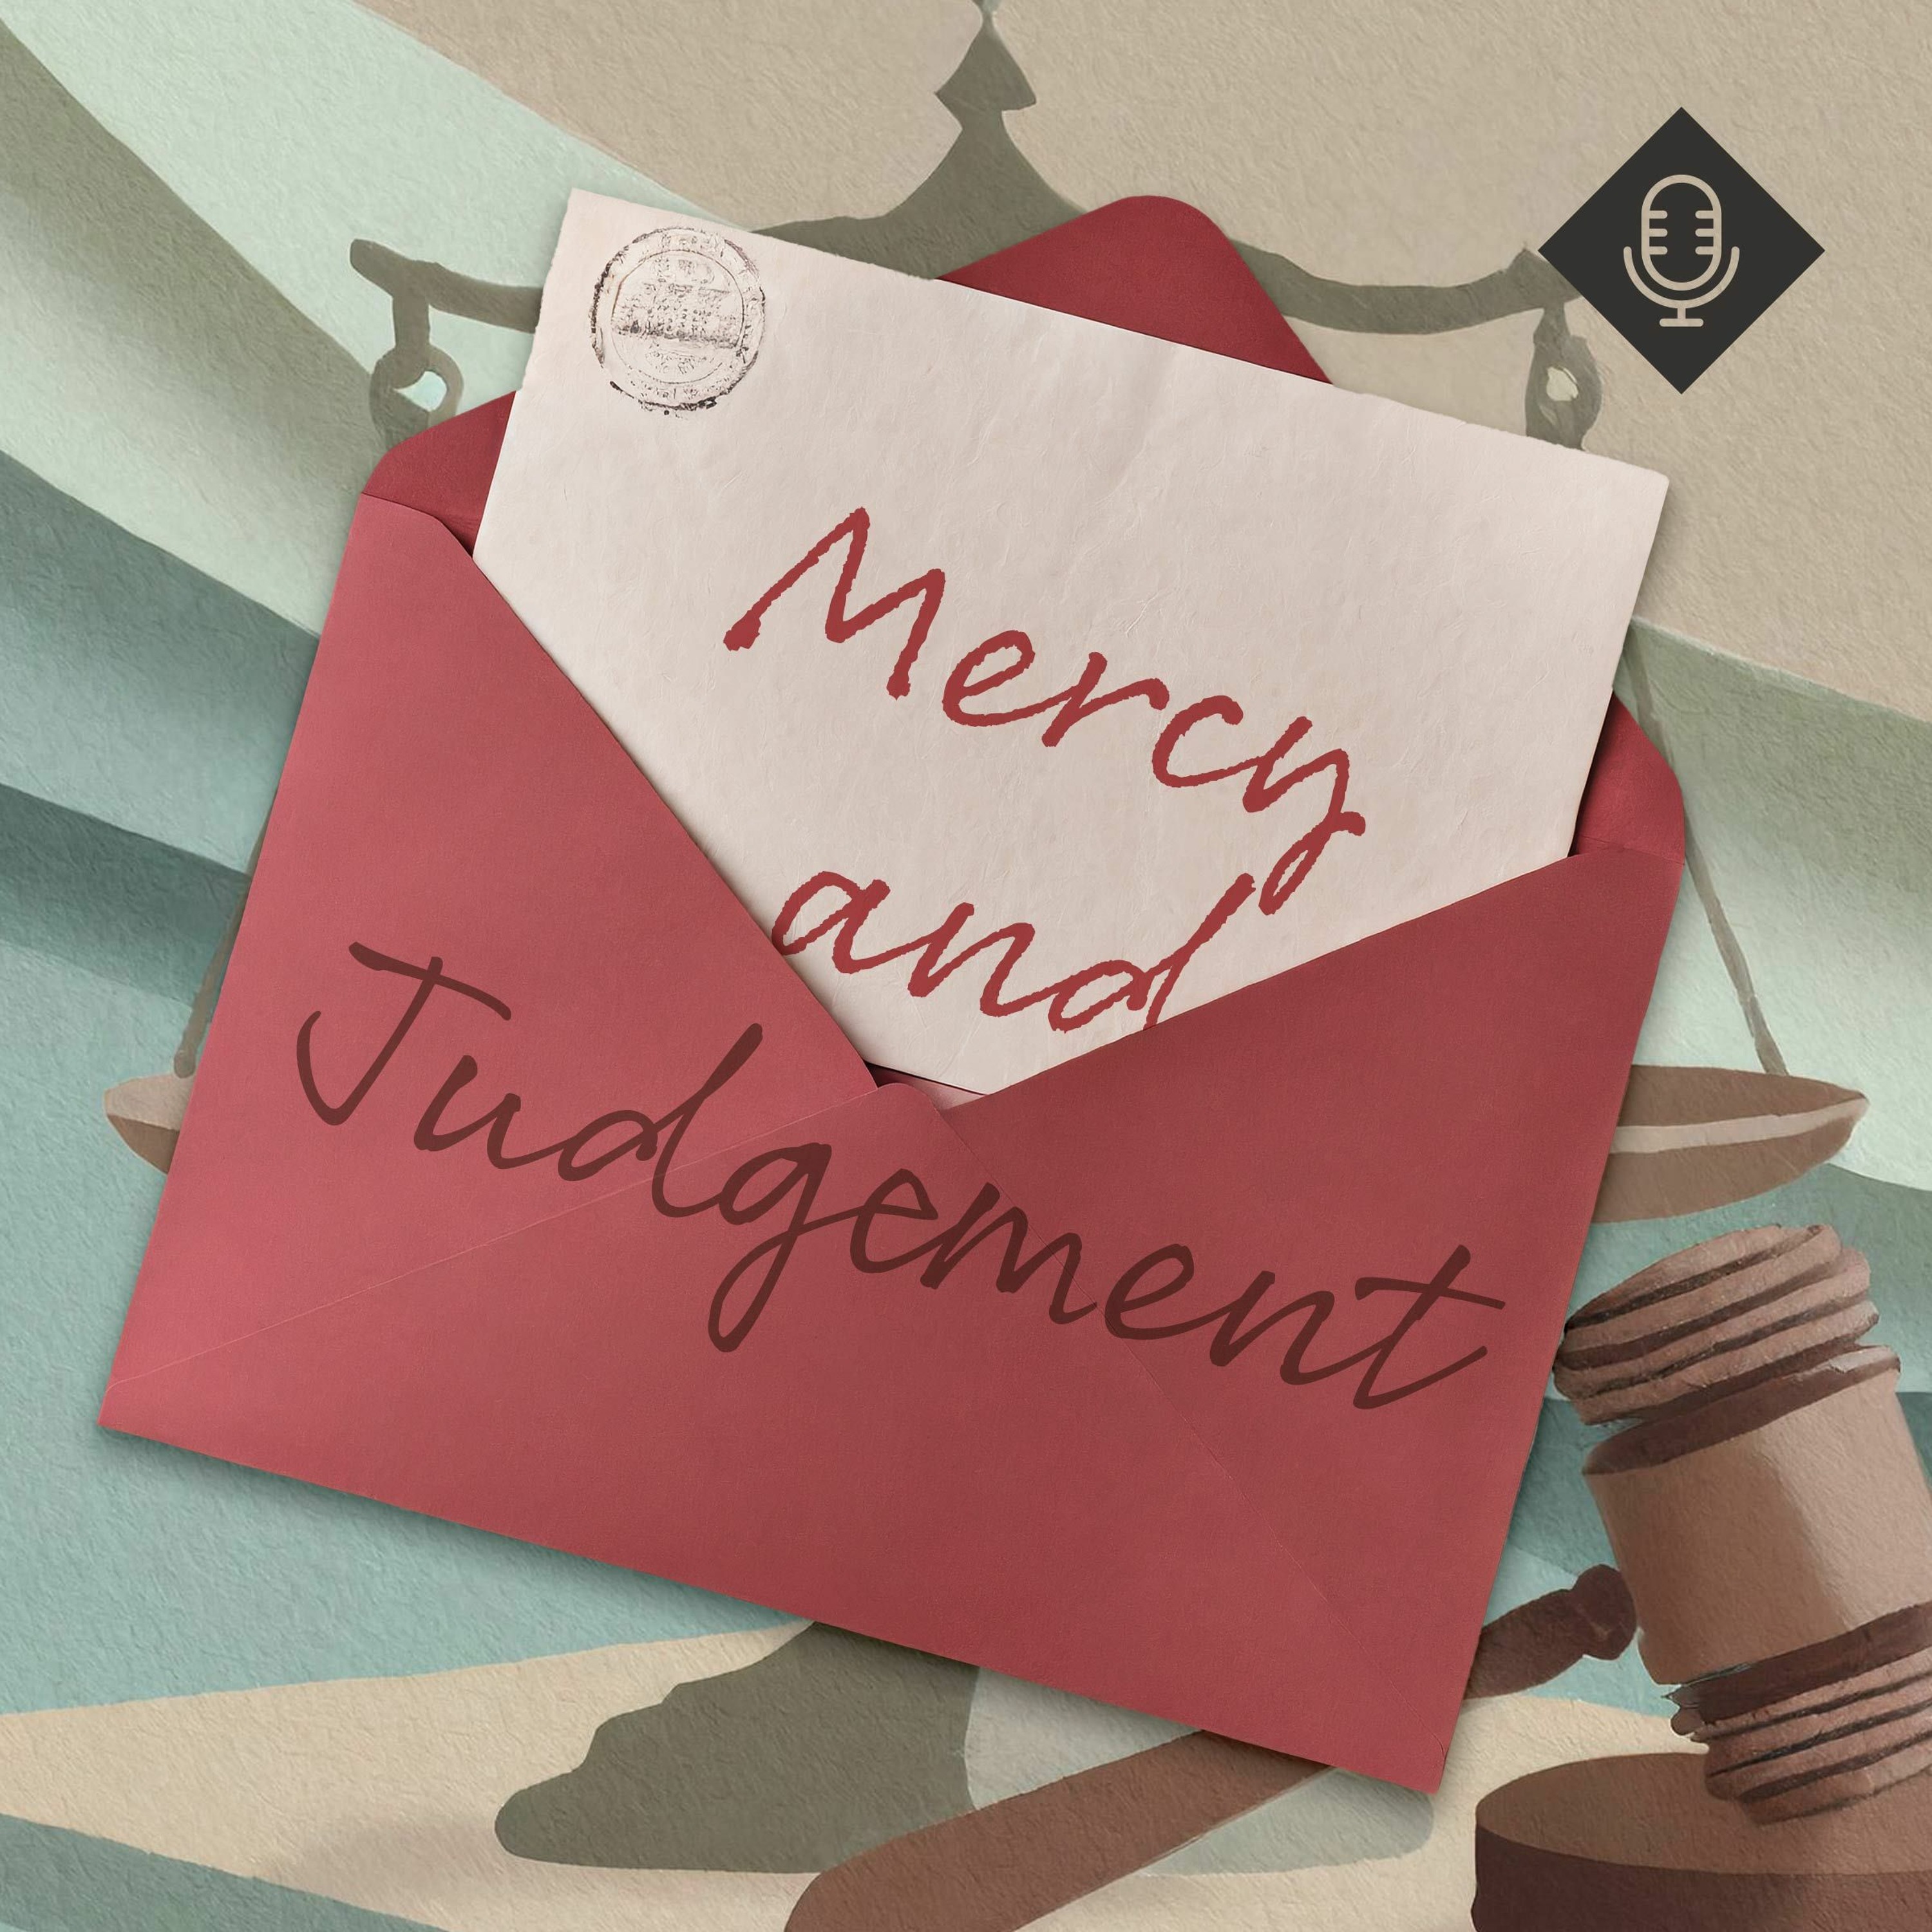 'Mercy and Judgement' / Neil Dawson